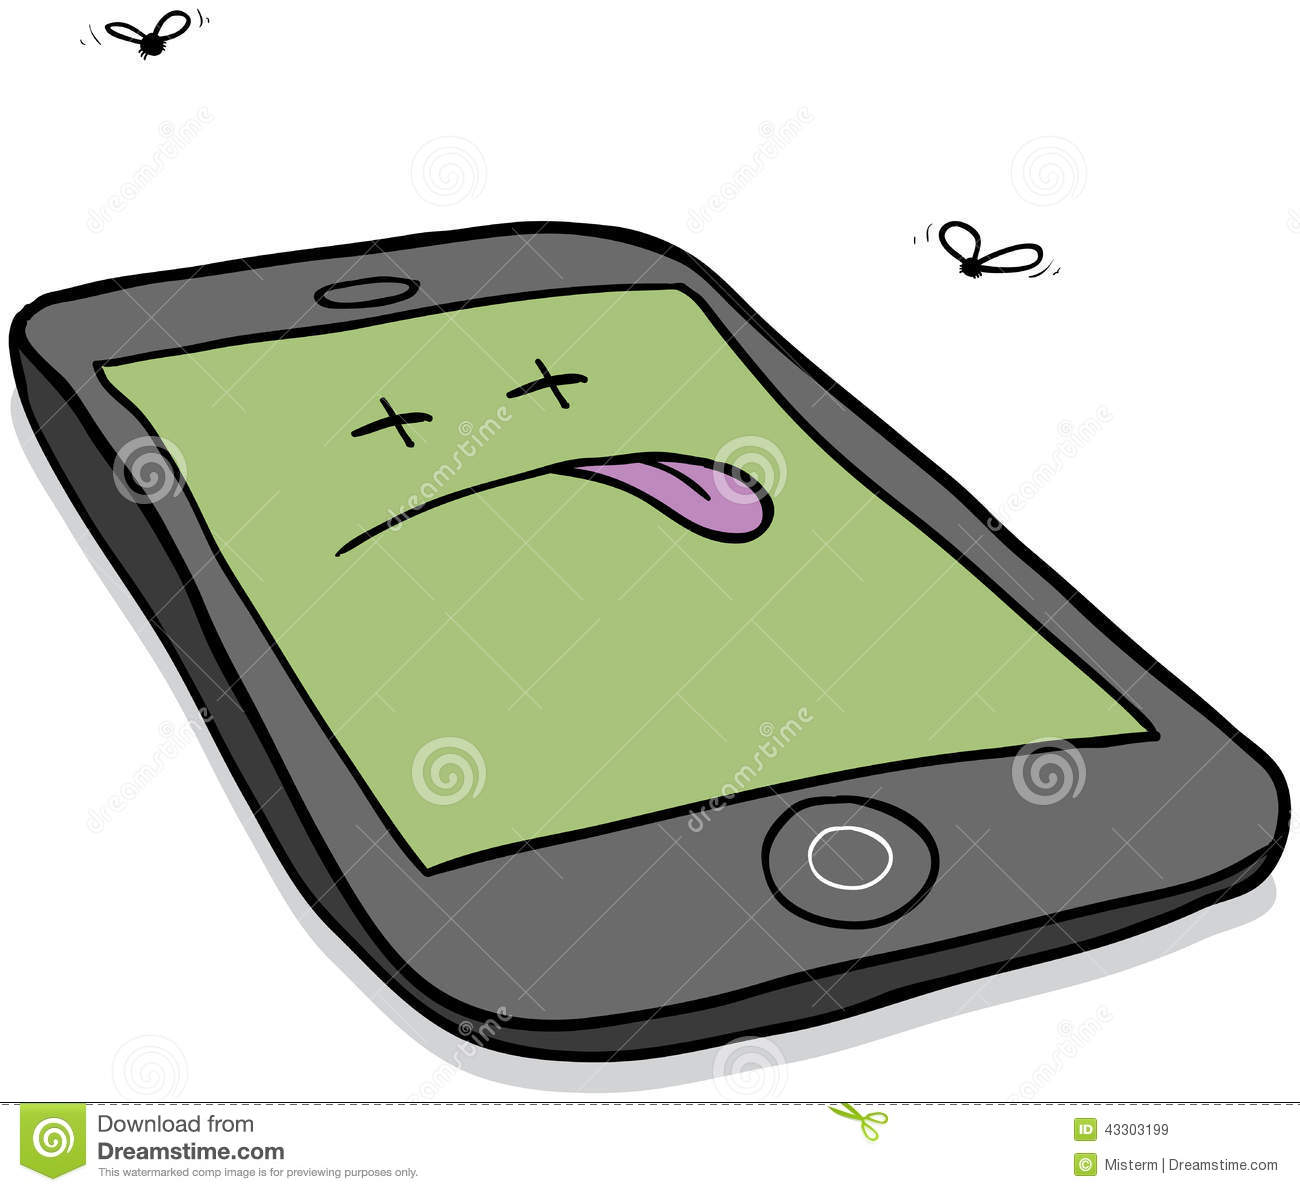 Cartoon Illustration Of A Deceased Smartphone In Need Of Repair Or